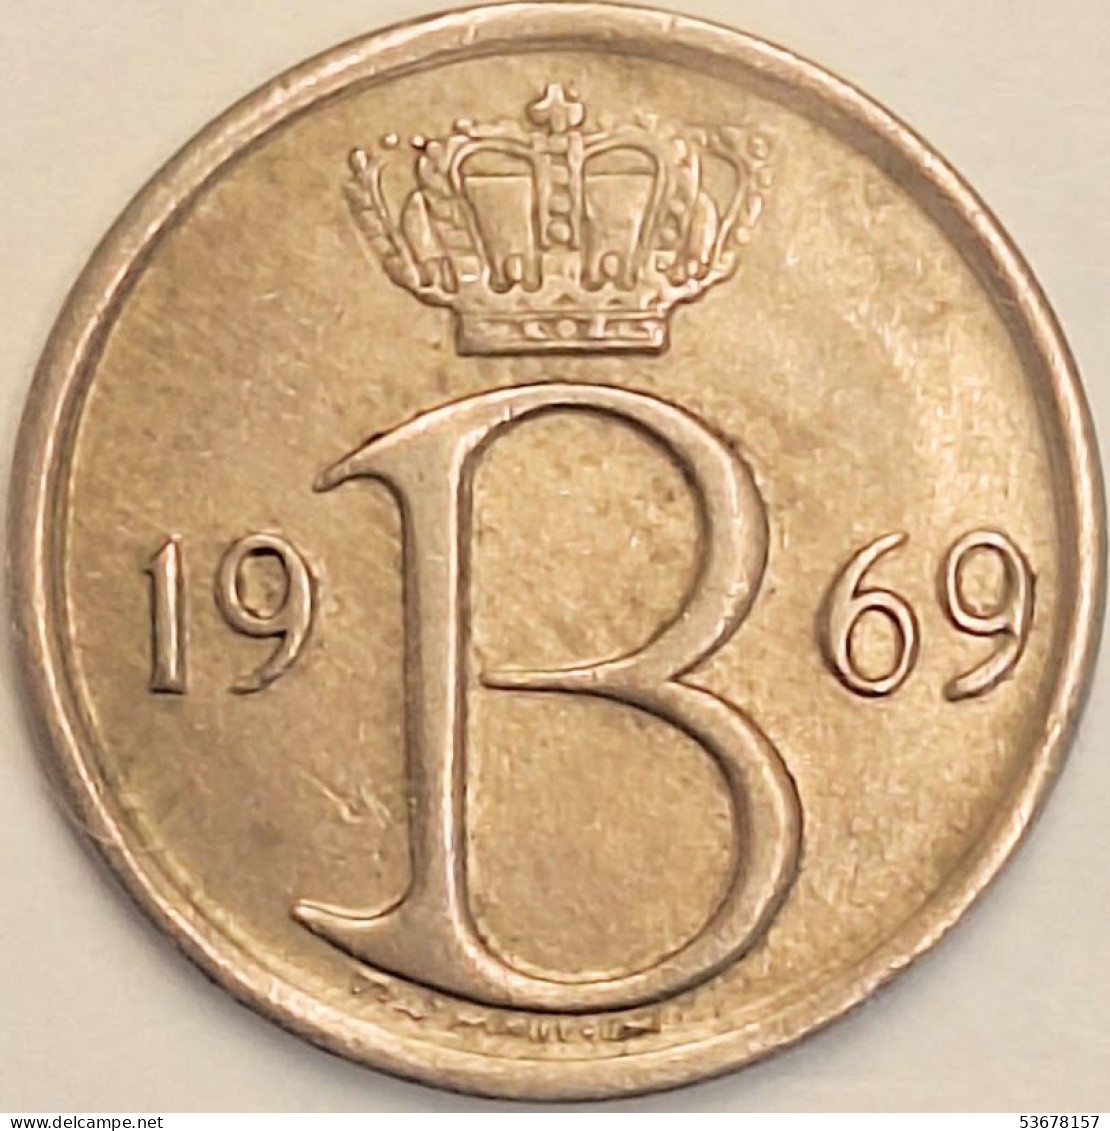 Belgium - 25 Centimes 1969, KM# 154.1 (#3085) - 25 Cents